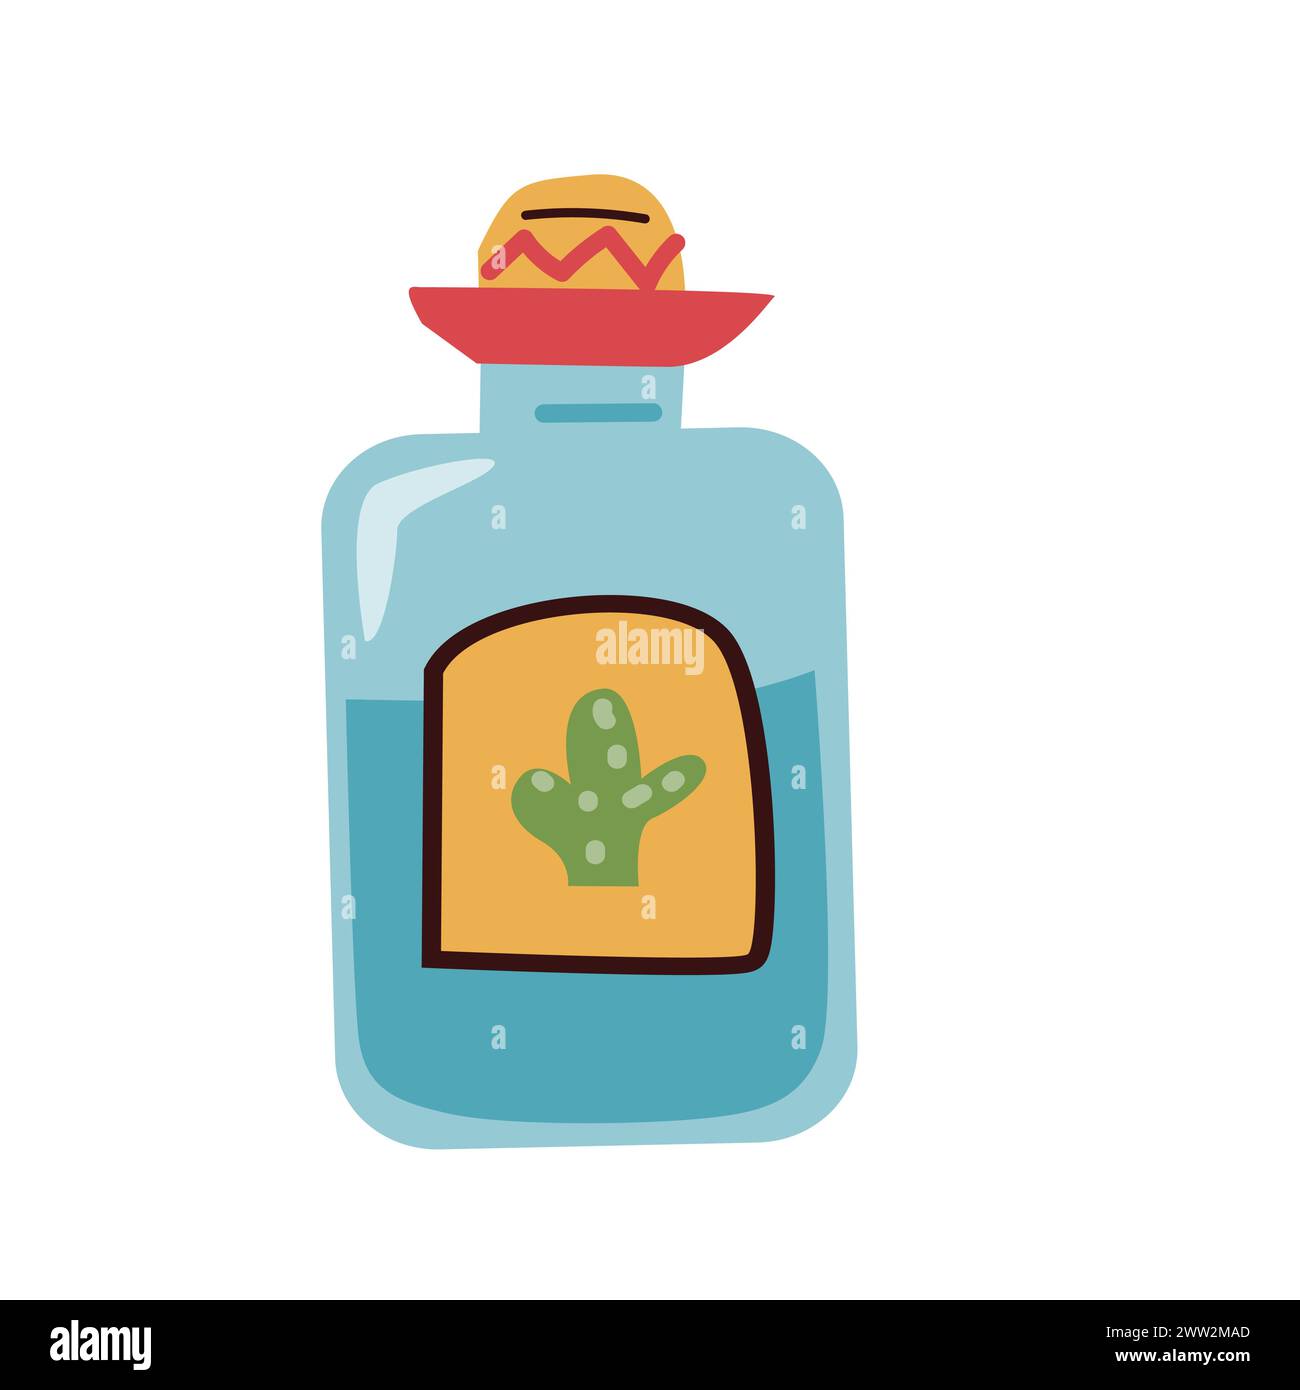 tequila mexicaine dans l'illusration vectorielle de bouteille. Illustration vectorielle dans un style plat. Peut être utilisé pour bannière de vacances mexicaines, flyer, cartes. Illustration de Vecteur